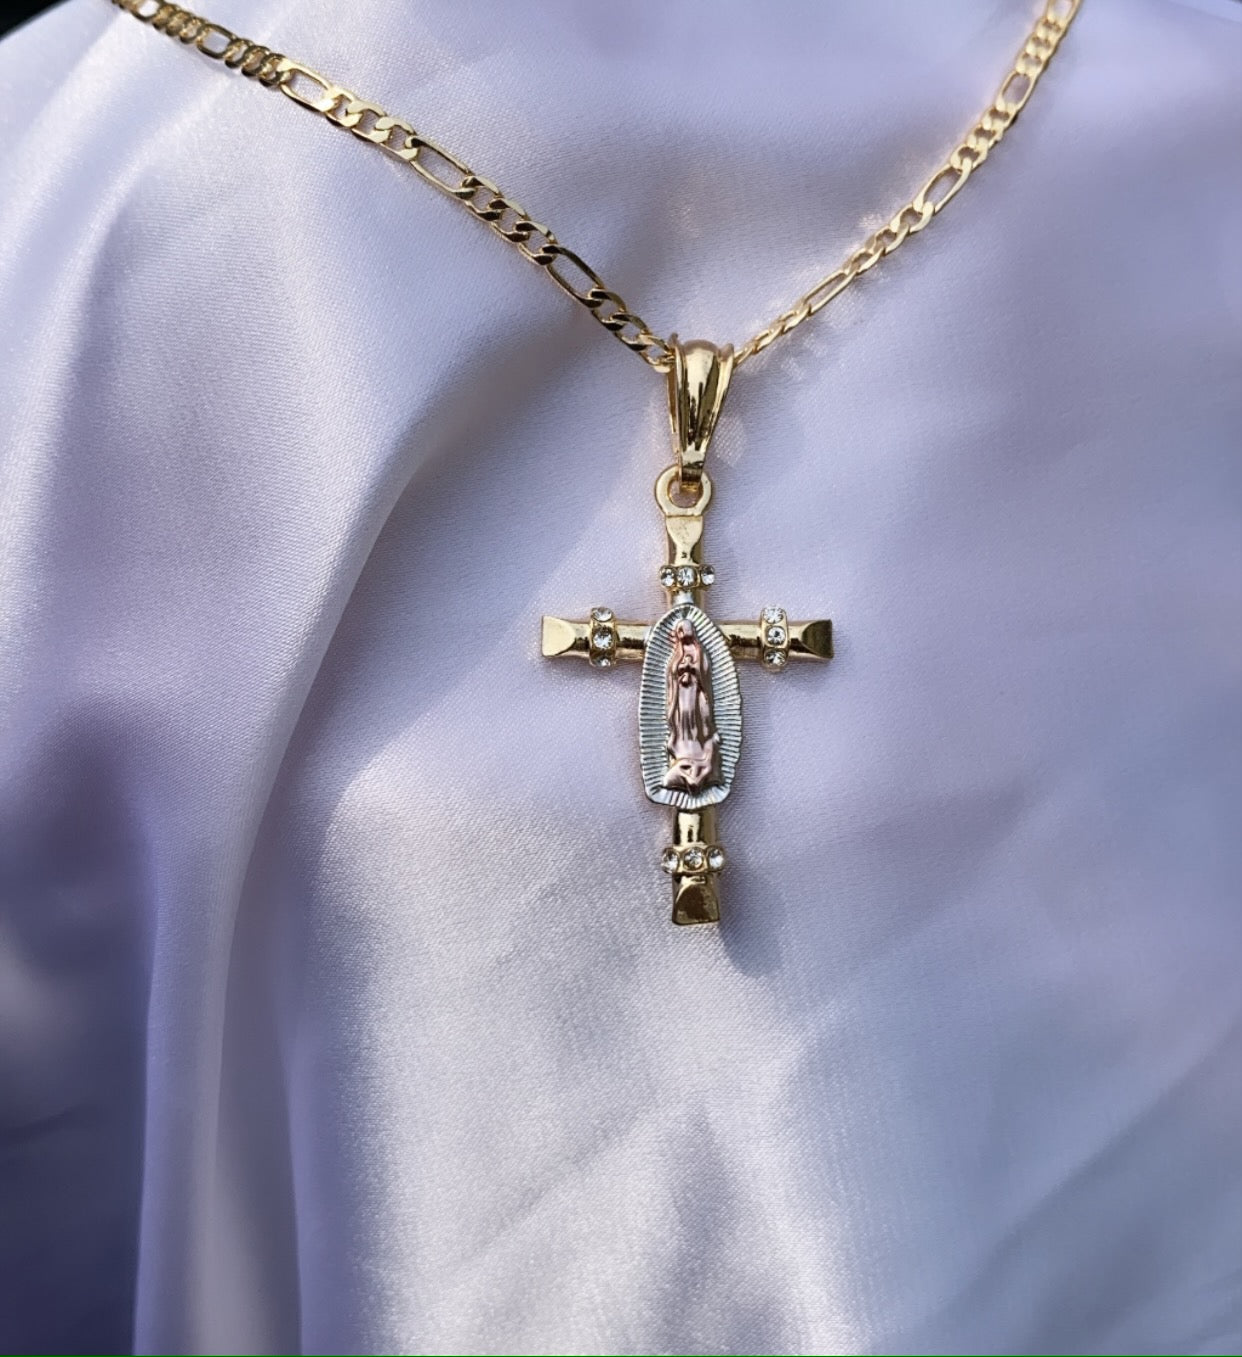 Virgin Mary cross